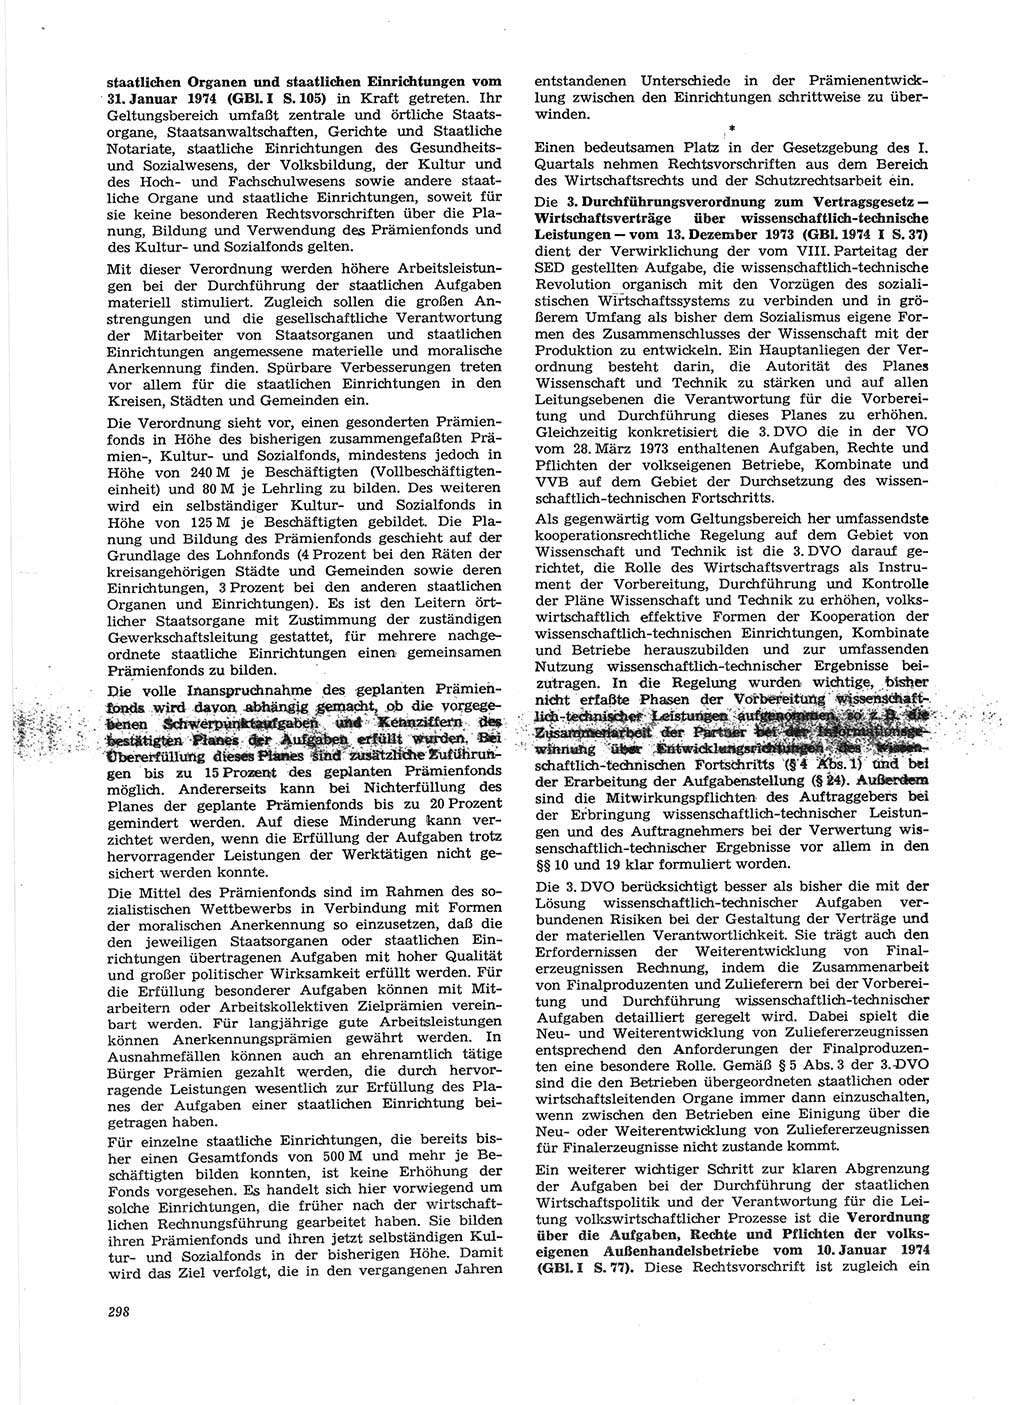 Neue Justiz (NJ), Zeitschrift für Recht und Rechtswissenschaft [Deutsche Demokratische Republik (DDR)], 28. Jahrgang 1974, Seite 298 (NJ DDR 1974, S. 298)